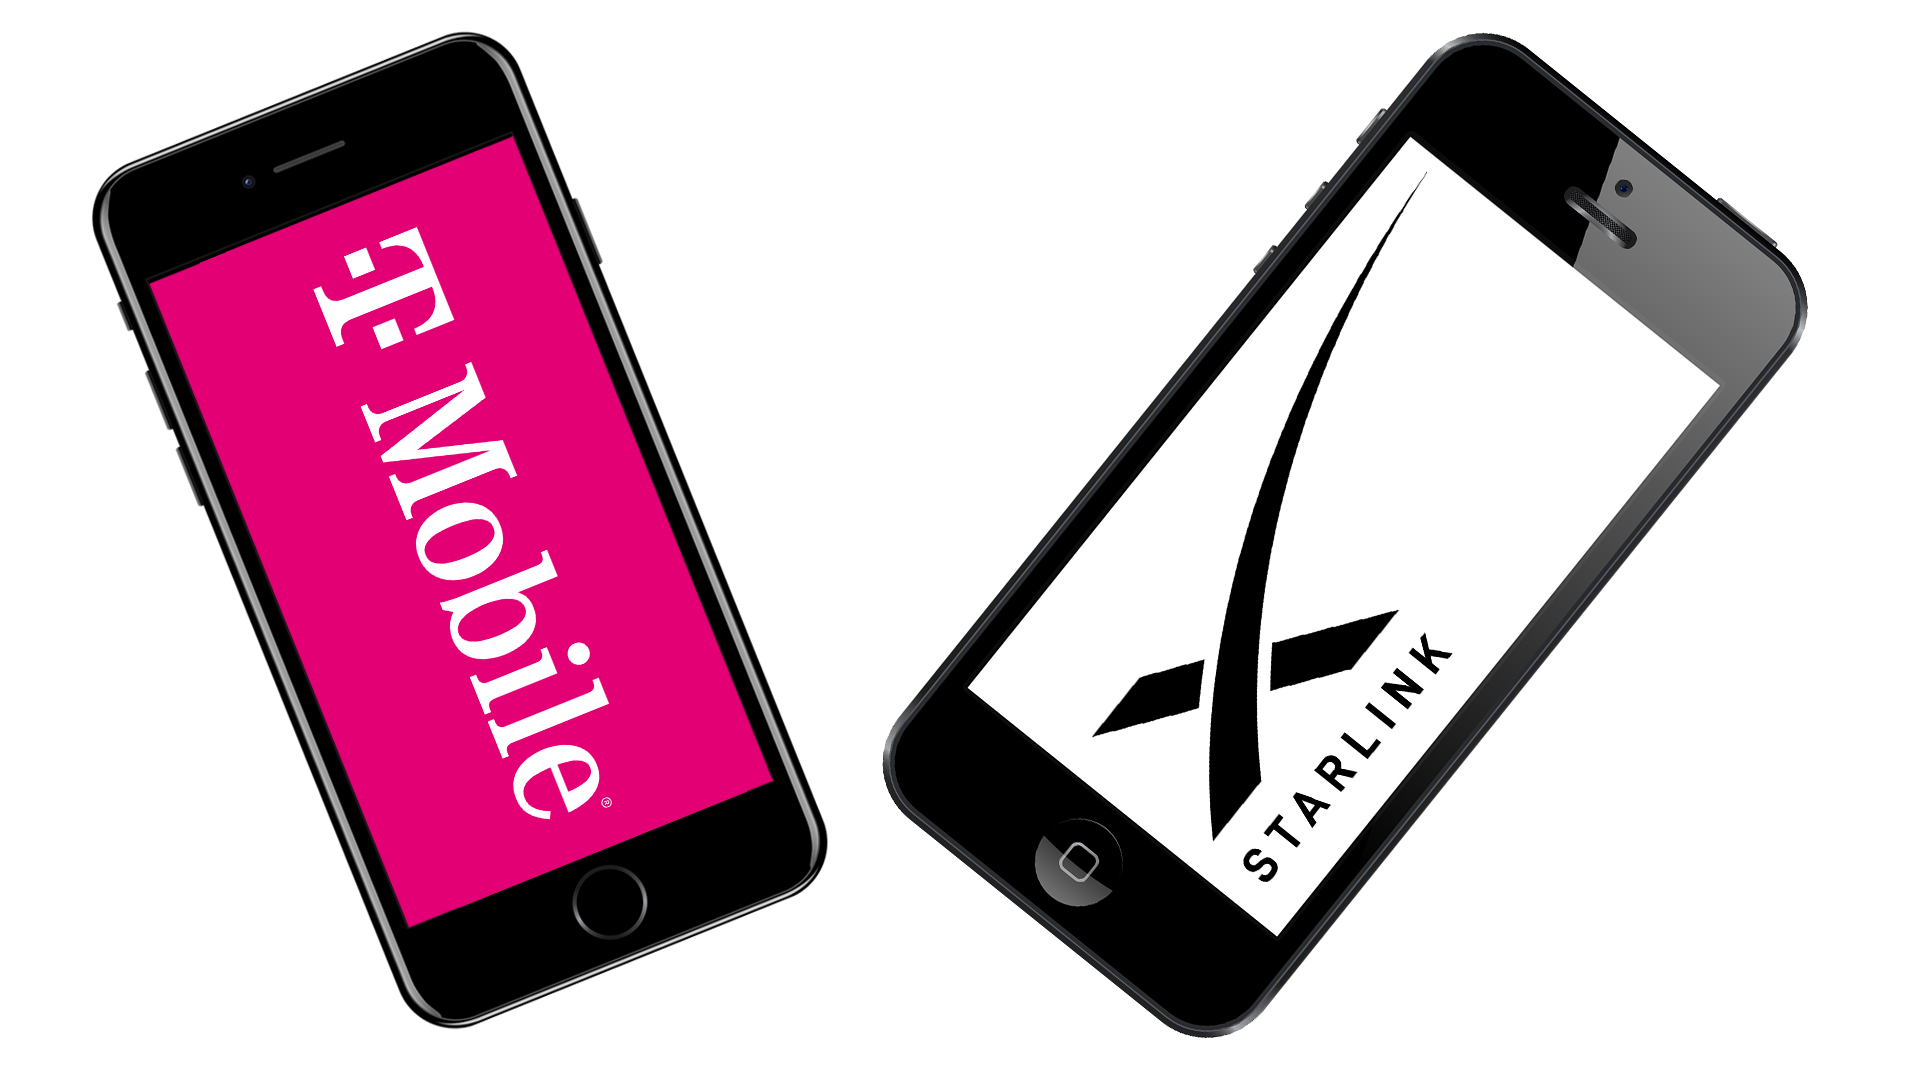 SpaceX จับมือ T-Mobile เพิ่มการเชื่อมต่อในพื้นที่ไร้สัญญาณโทรศัพท์ด้วยดาวเทียม Starlink